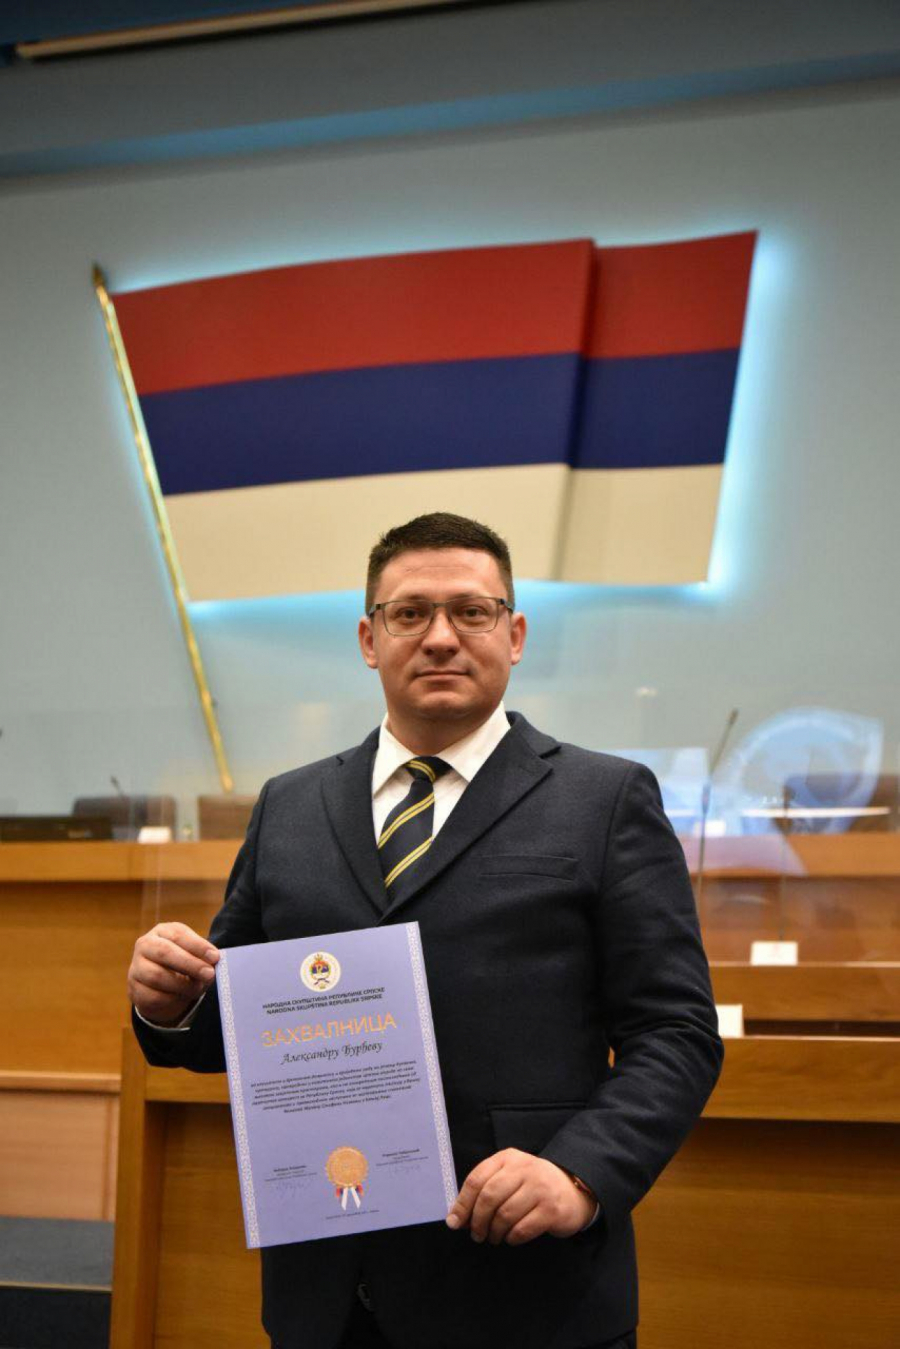 Predsedniku Srpske lige Aleksandru Đurđevu uručena zahvalnica Narodne skupštine Republike Srpske (FOTO)